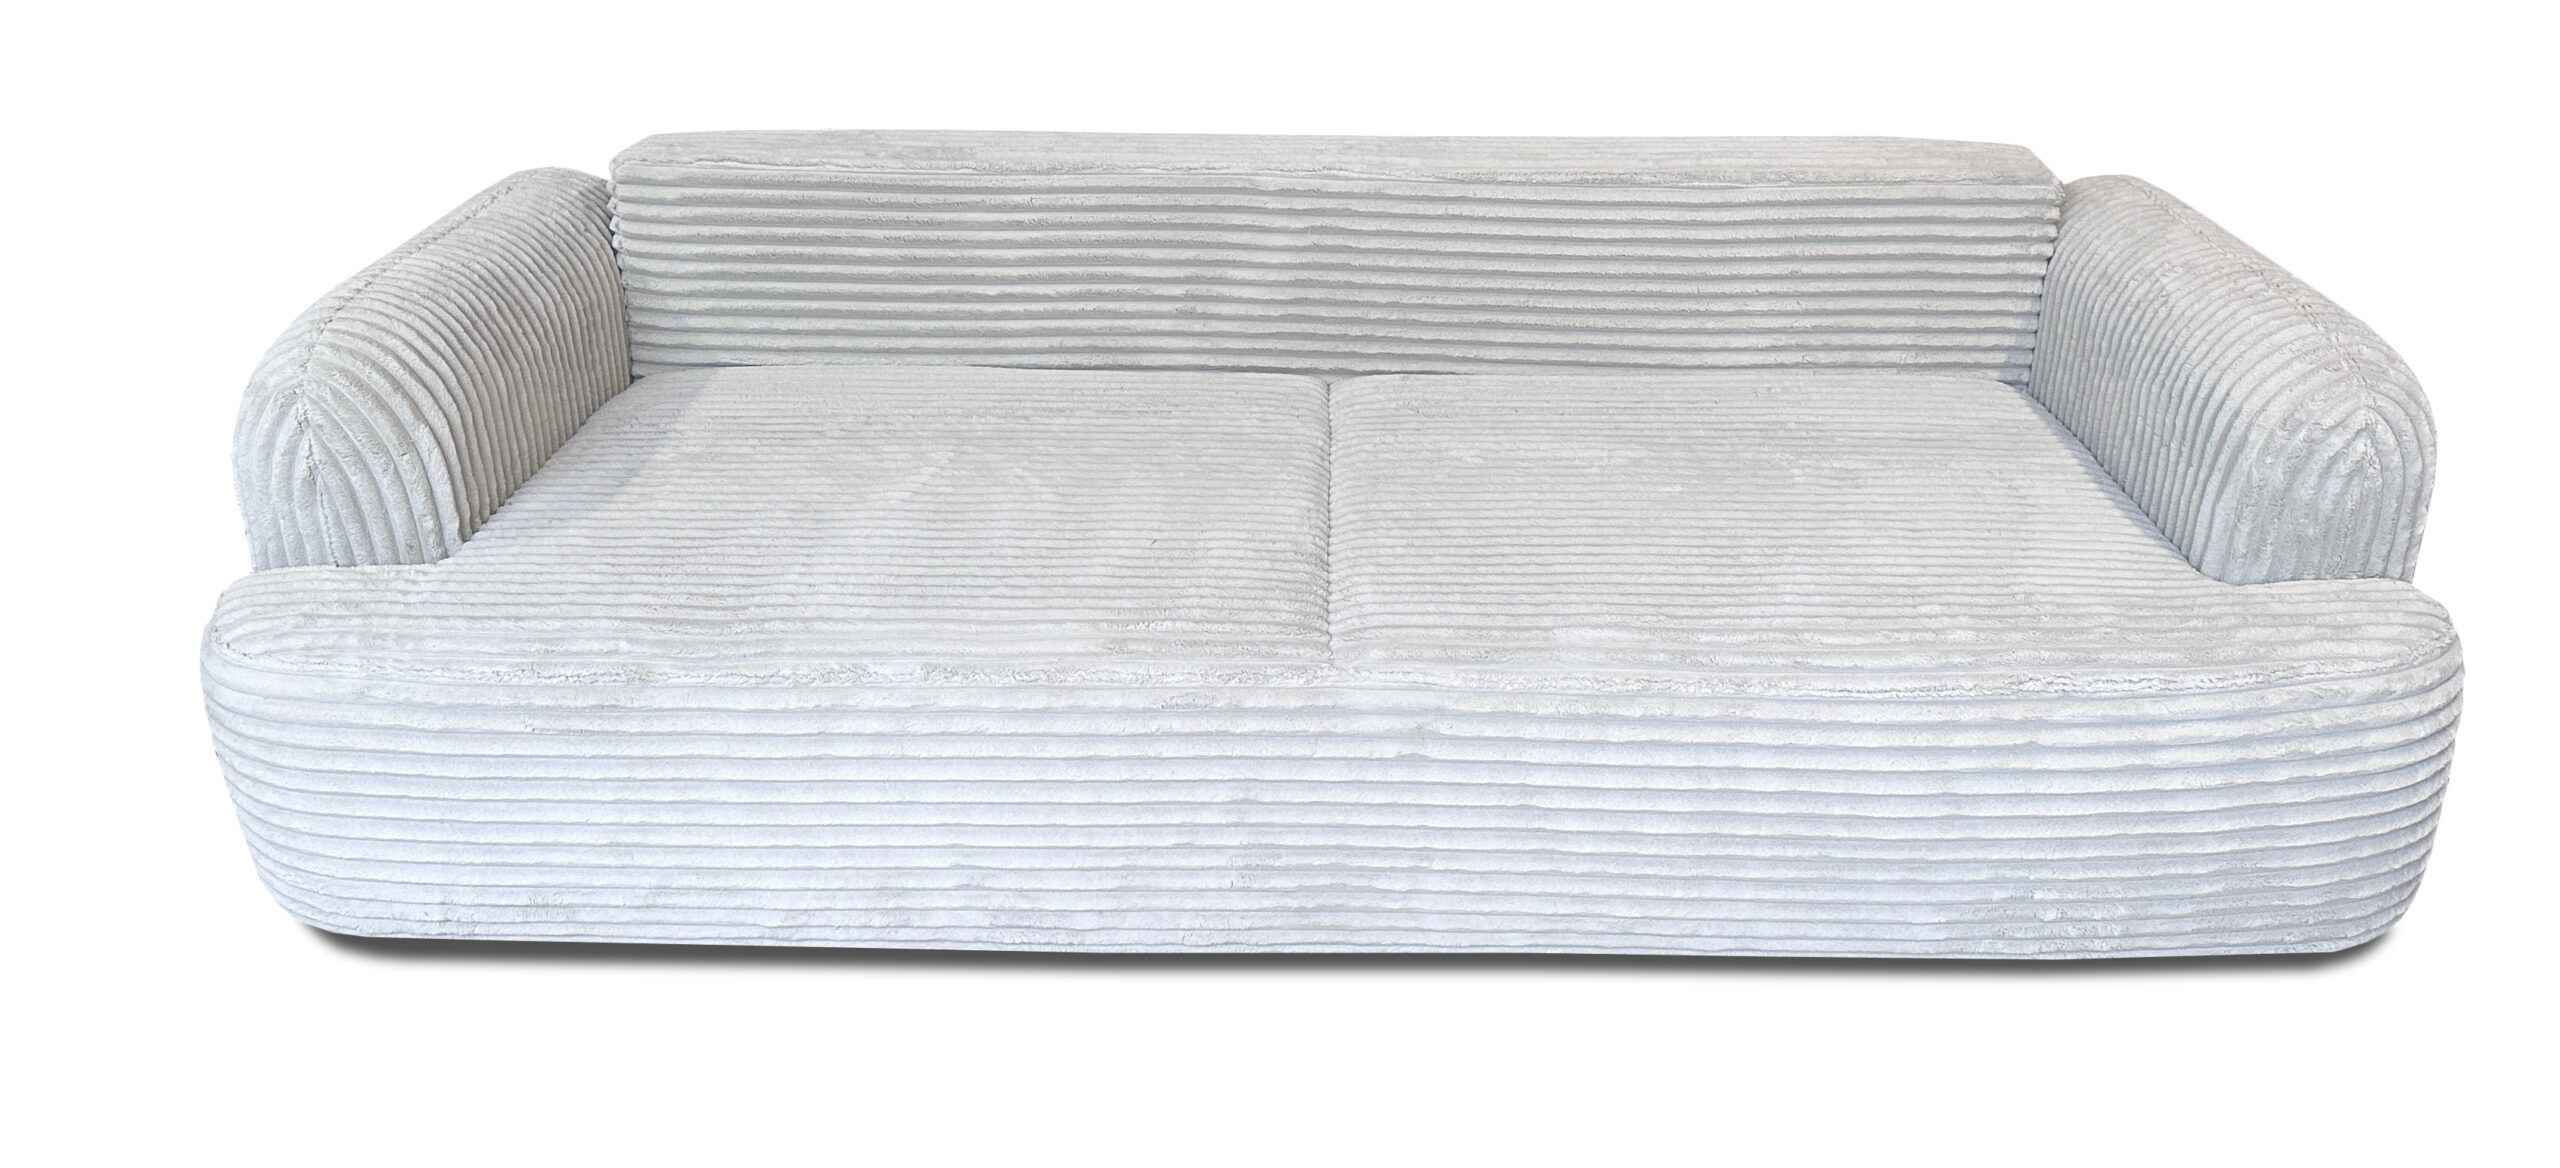 Sofa rozkładana kanapa Limba 250 x 108 cm tkanina styl skandynawski